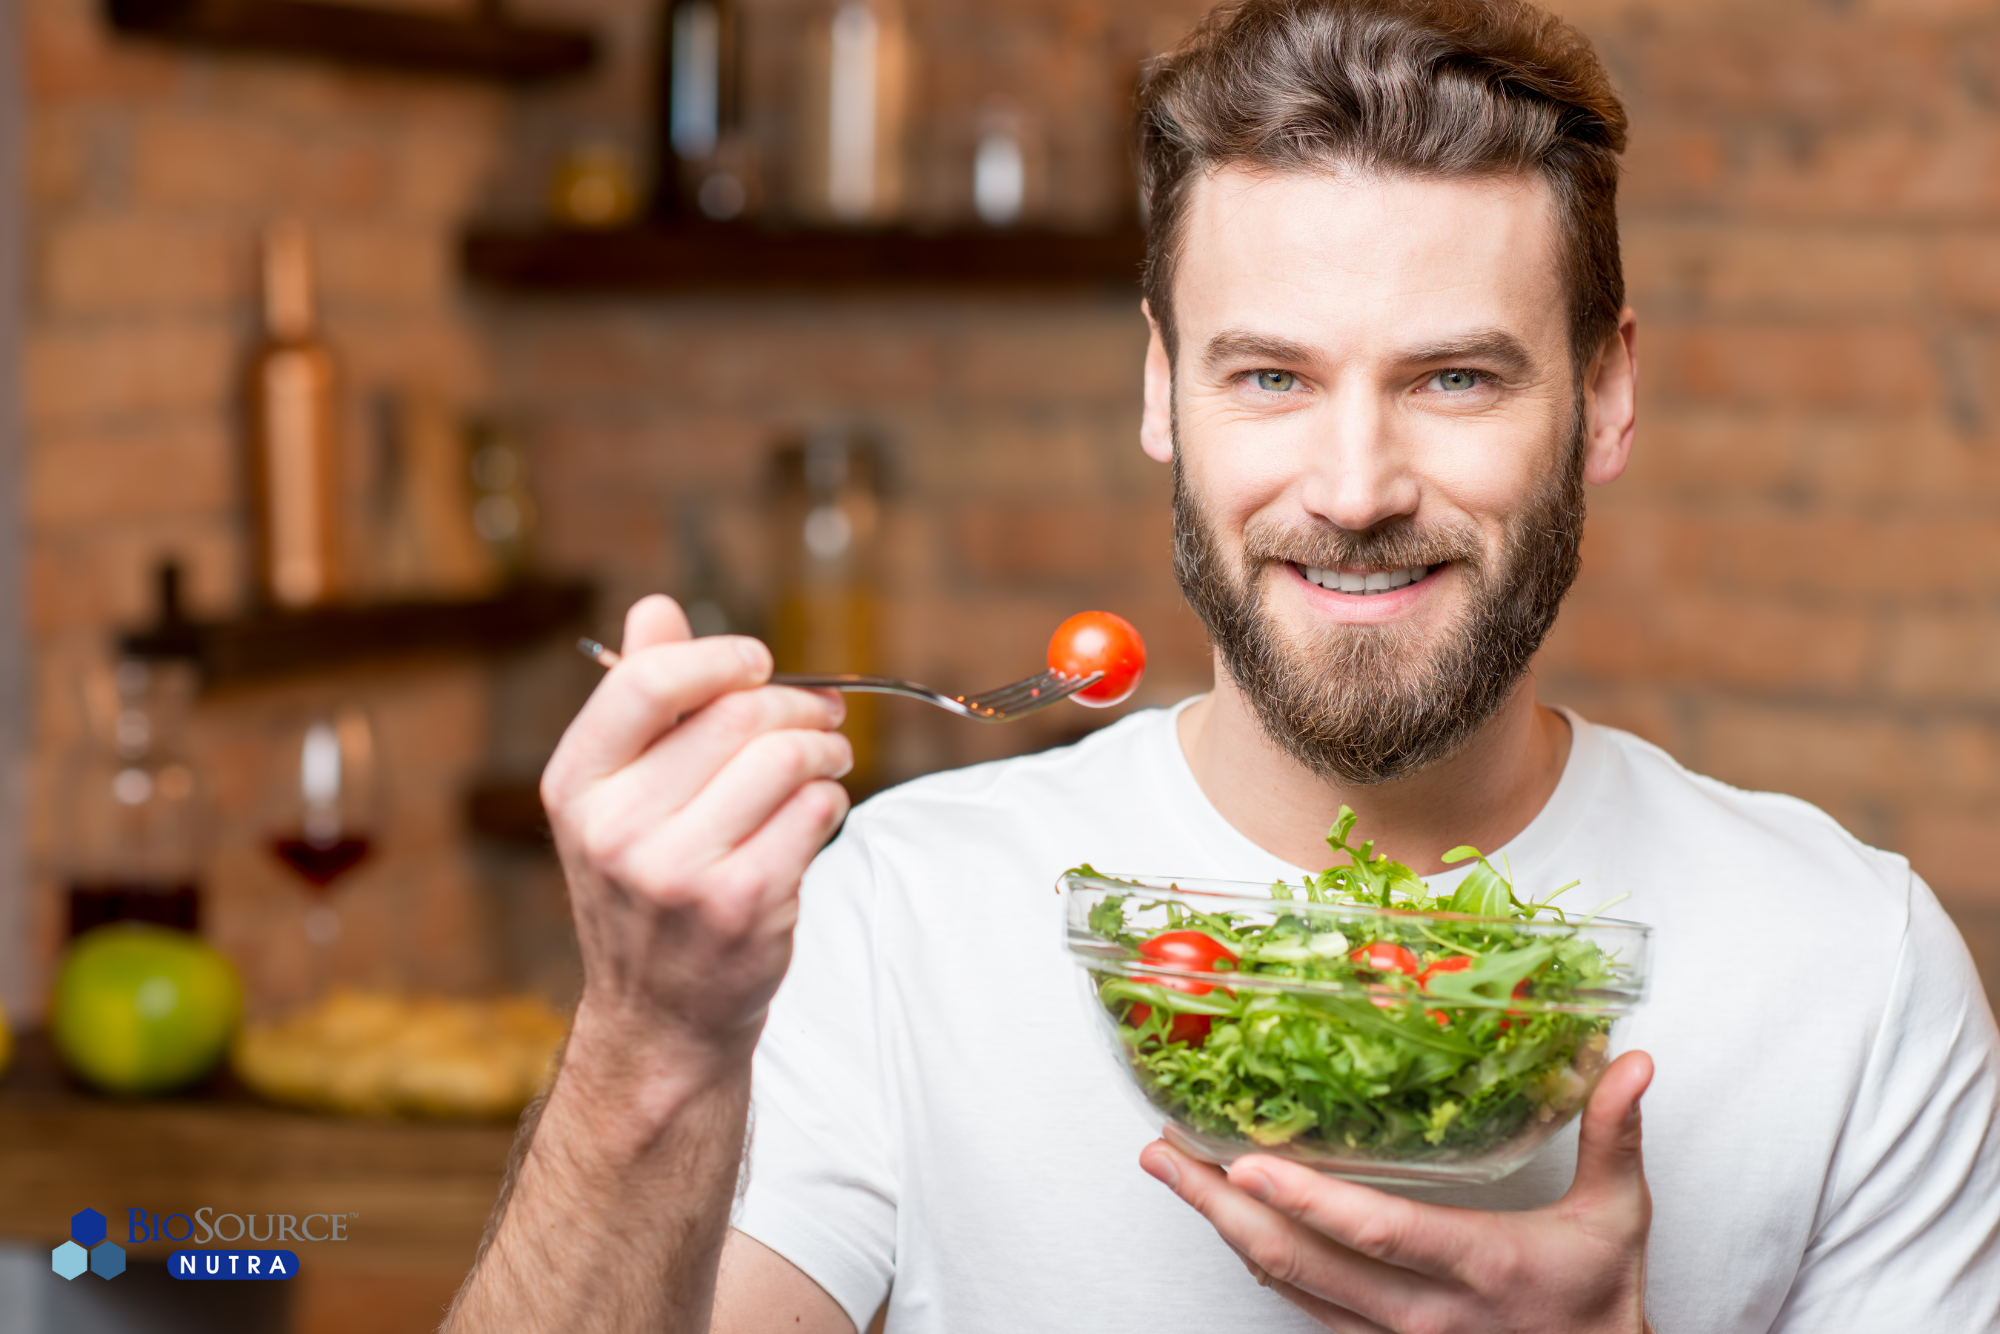 A man enjoys a leafy green salad